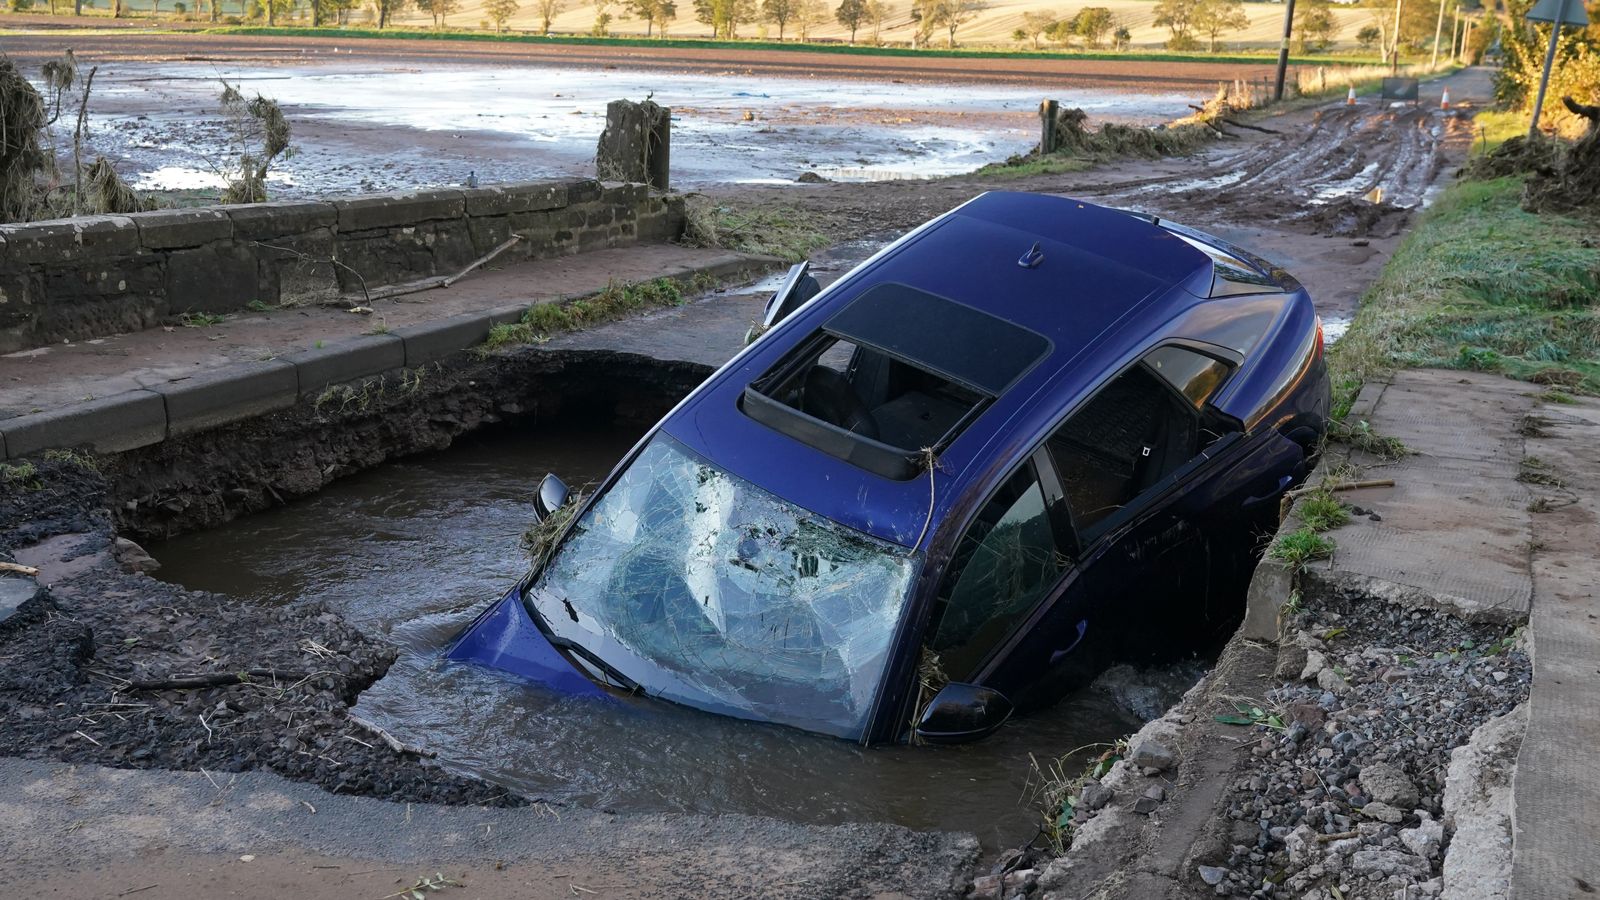 Anh: Một phụ nữ tử vong trong lũ lụt do bão Babet ở Derbyshire - Ảnh 1.